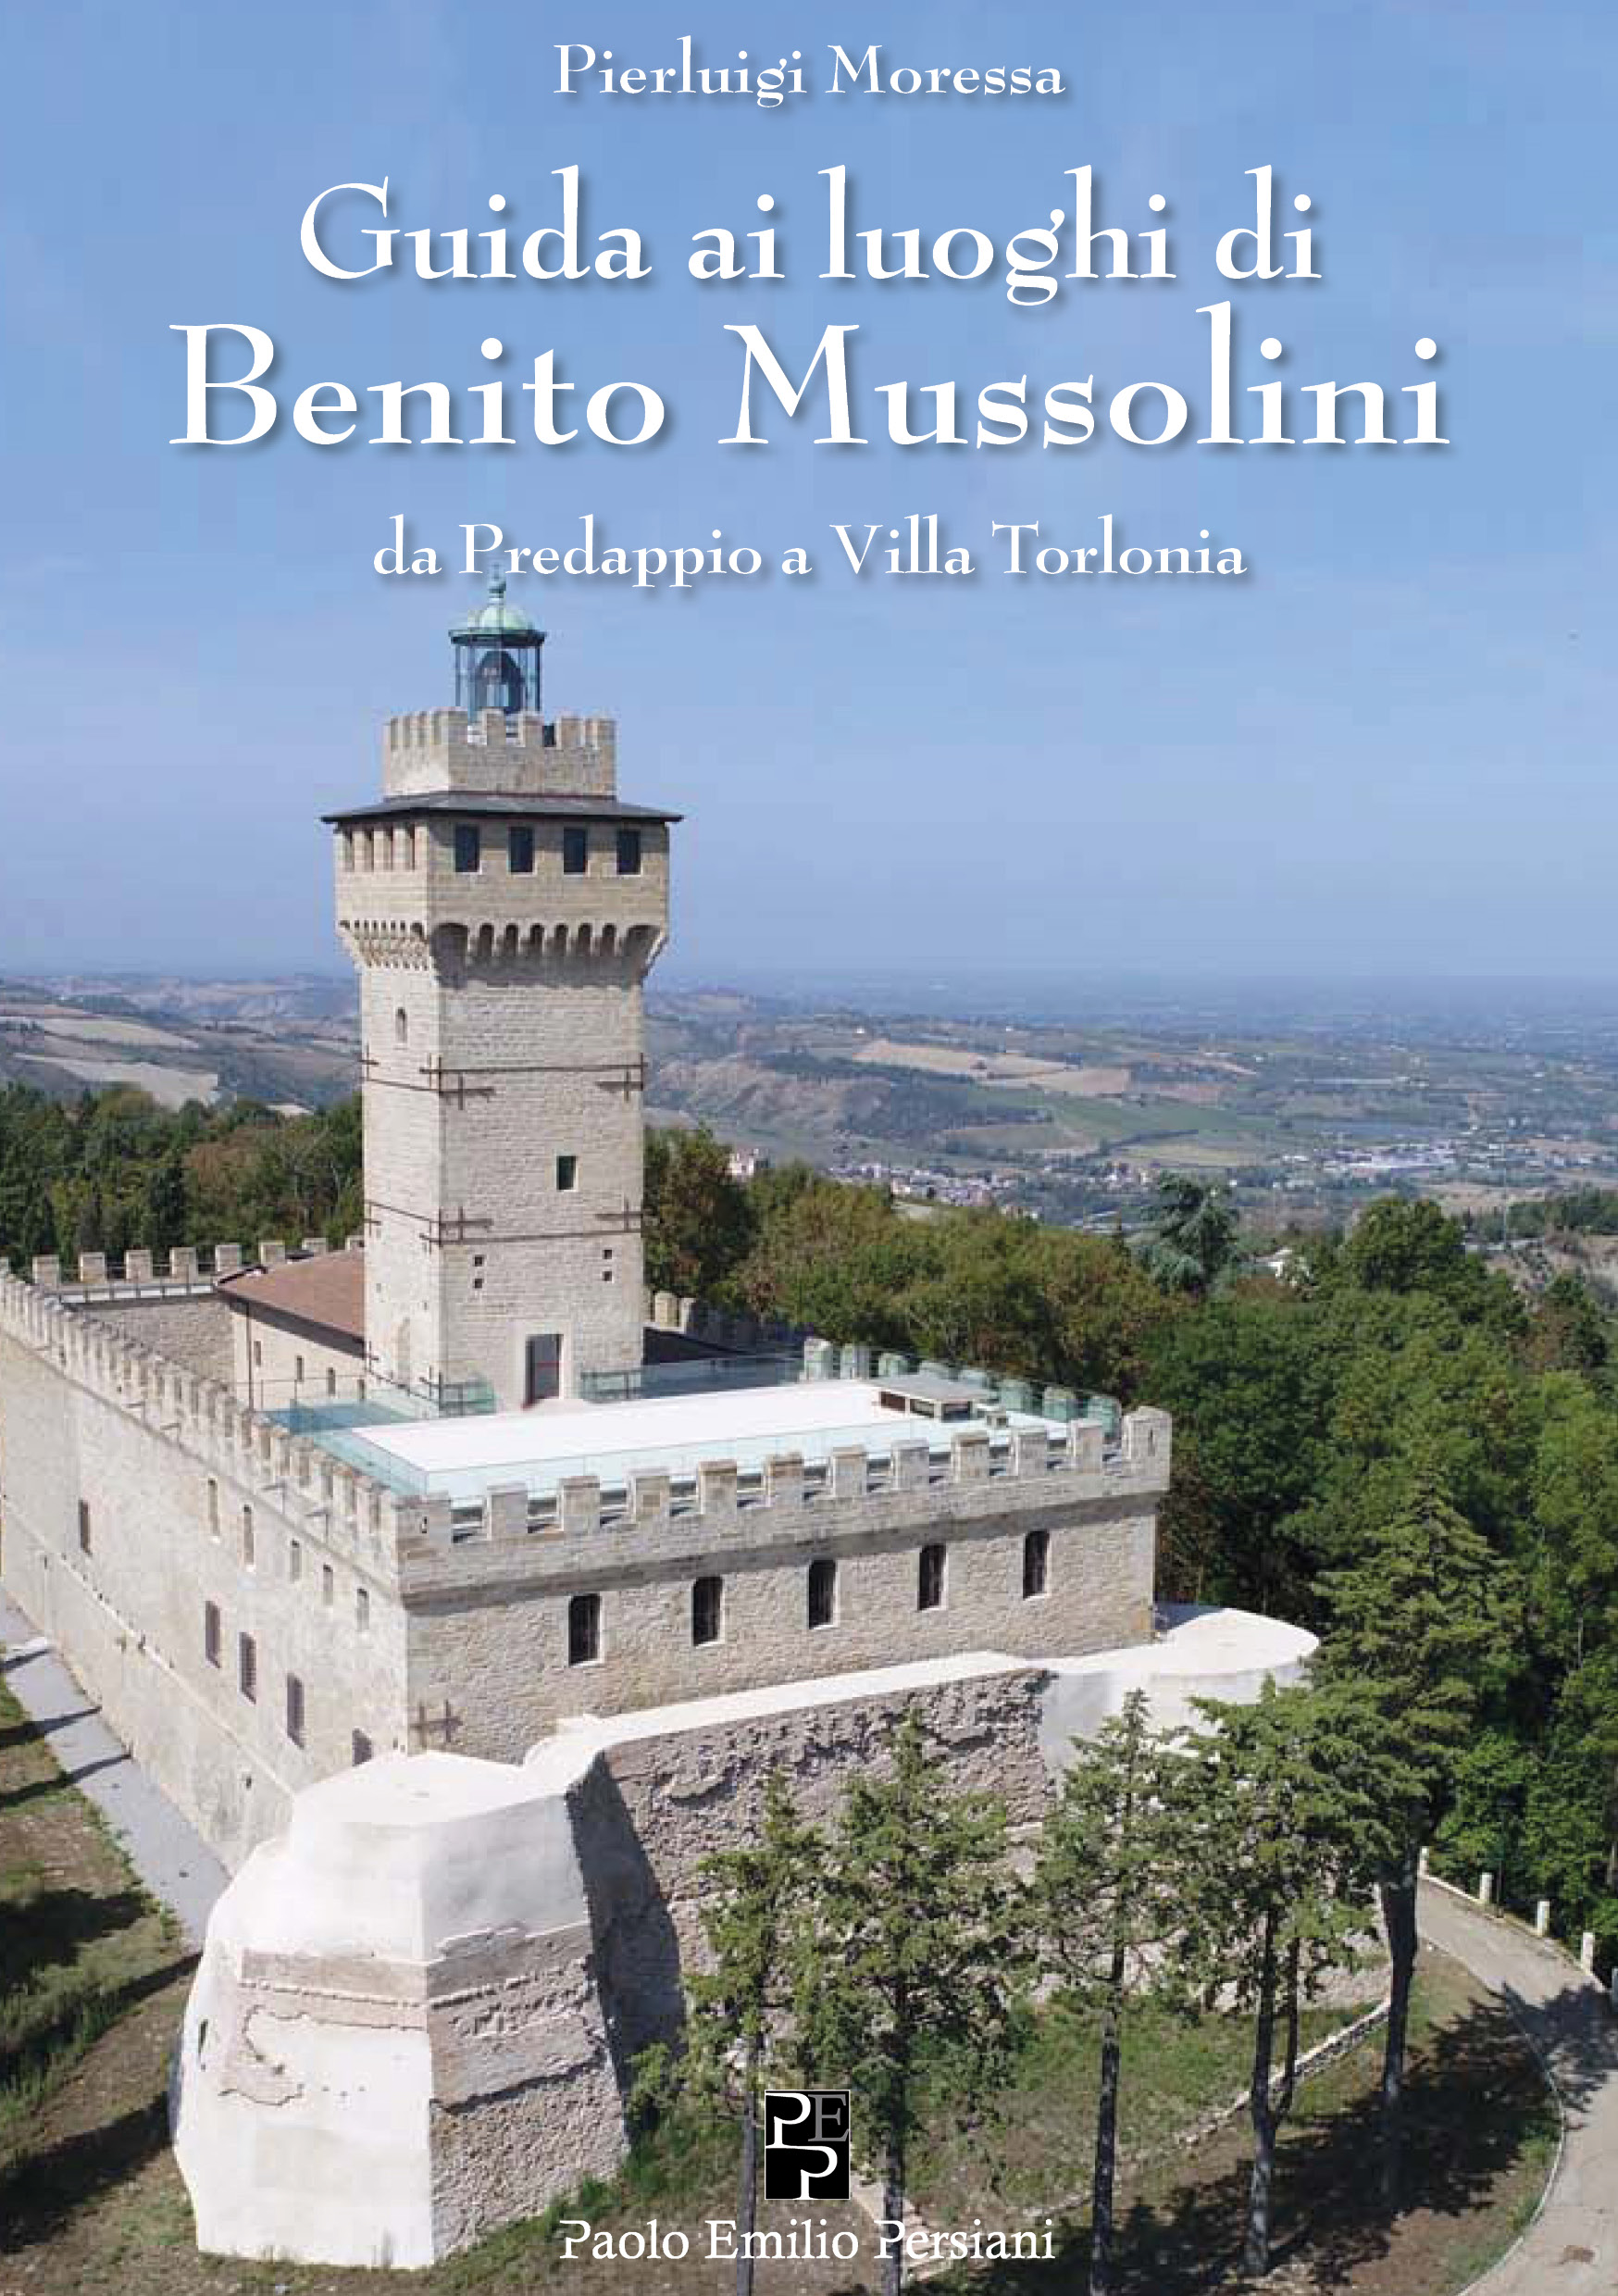 Una guida sui luoghi di Mussolini per un viaggio nei luoghi della memoria